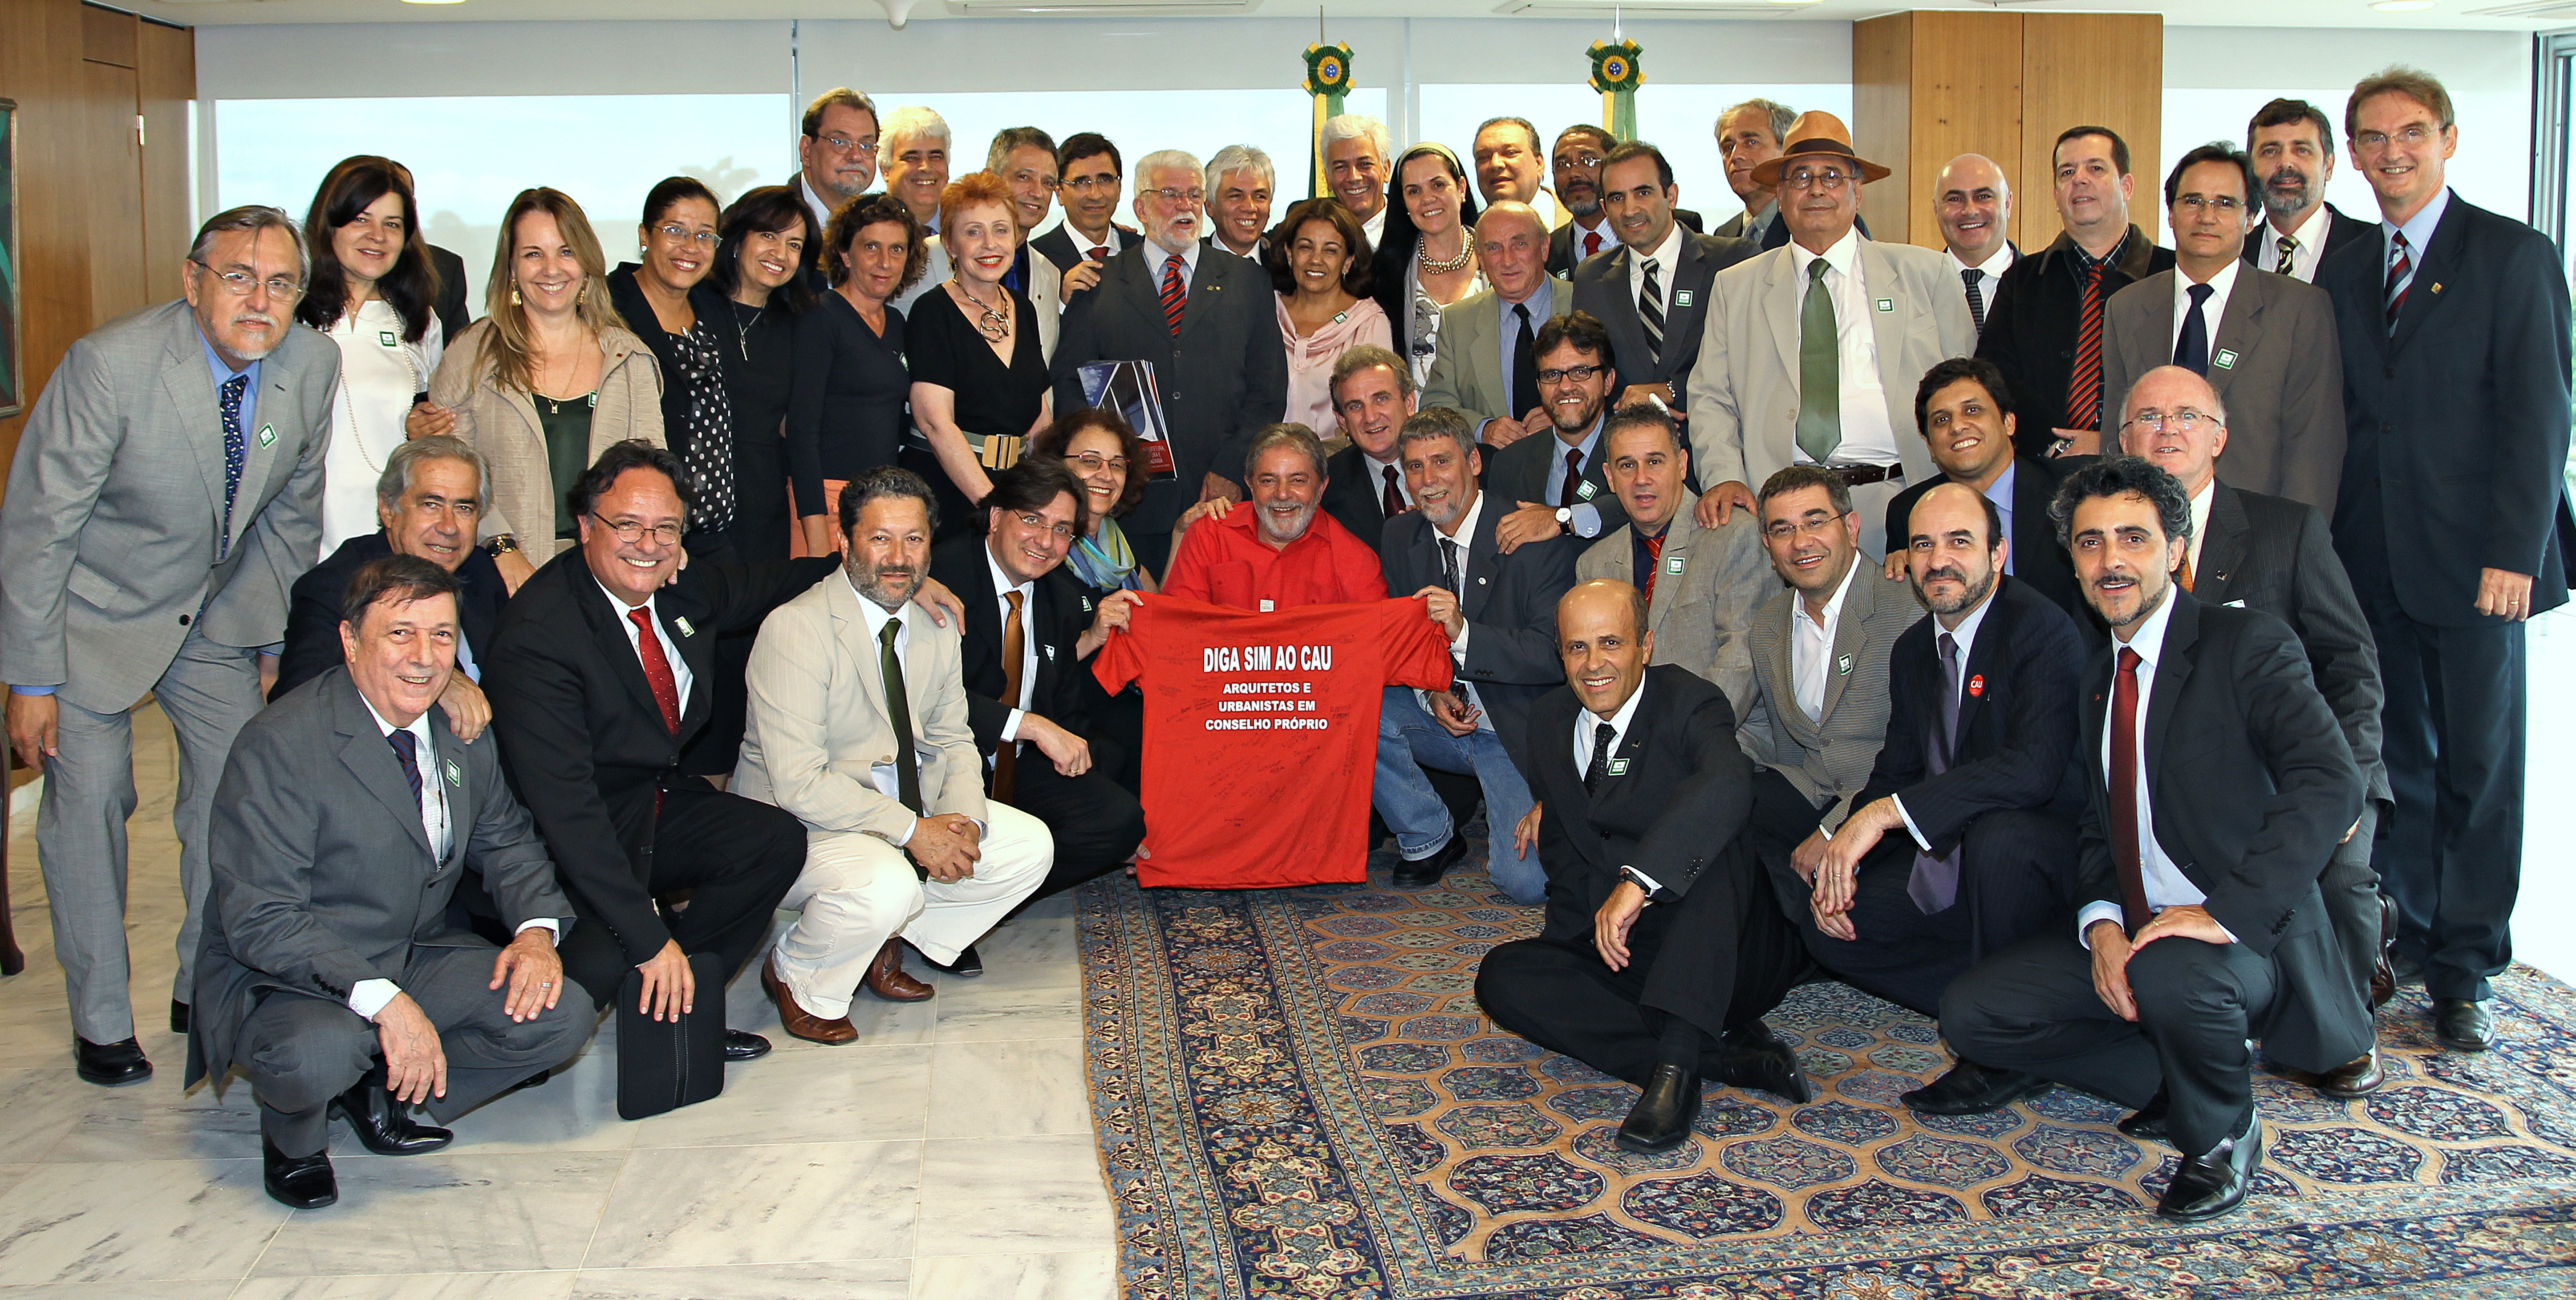 Presidente Lula durante encontro com representantes do Conselho de Arquitetura e Urbanismo (CAU)